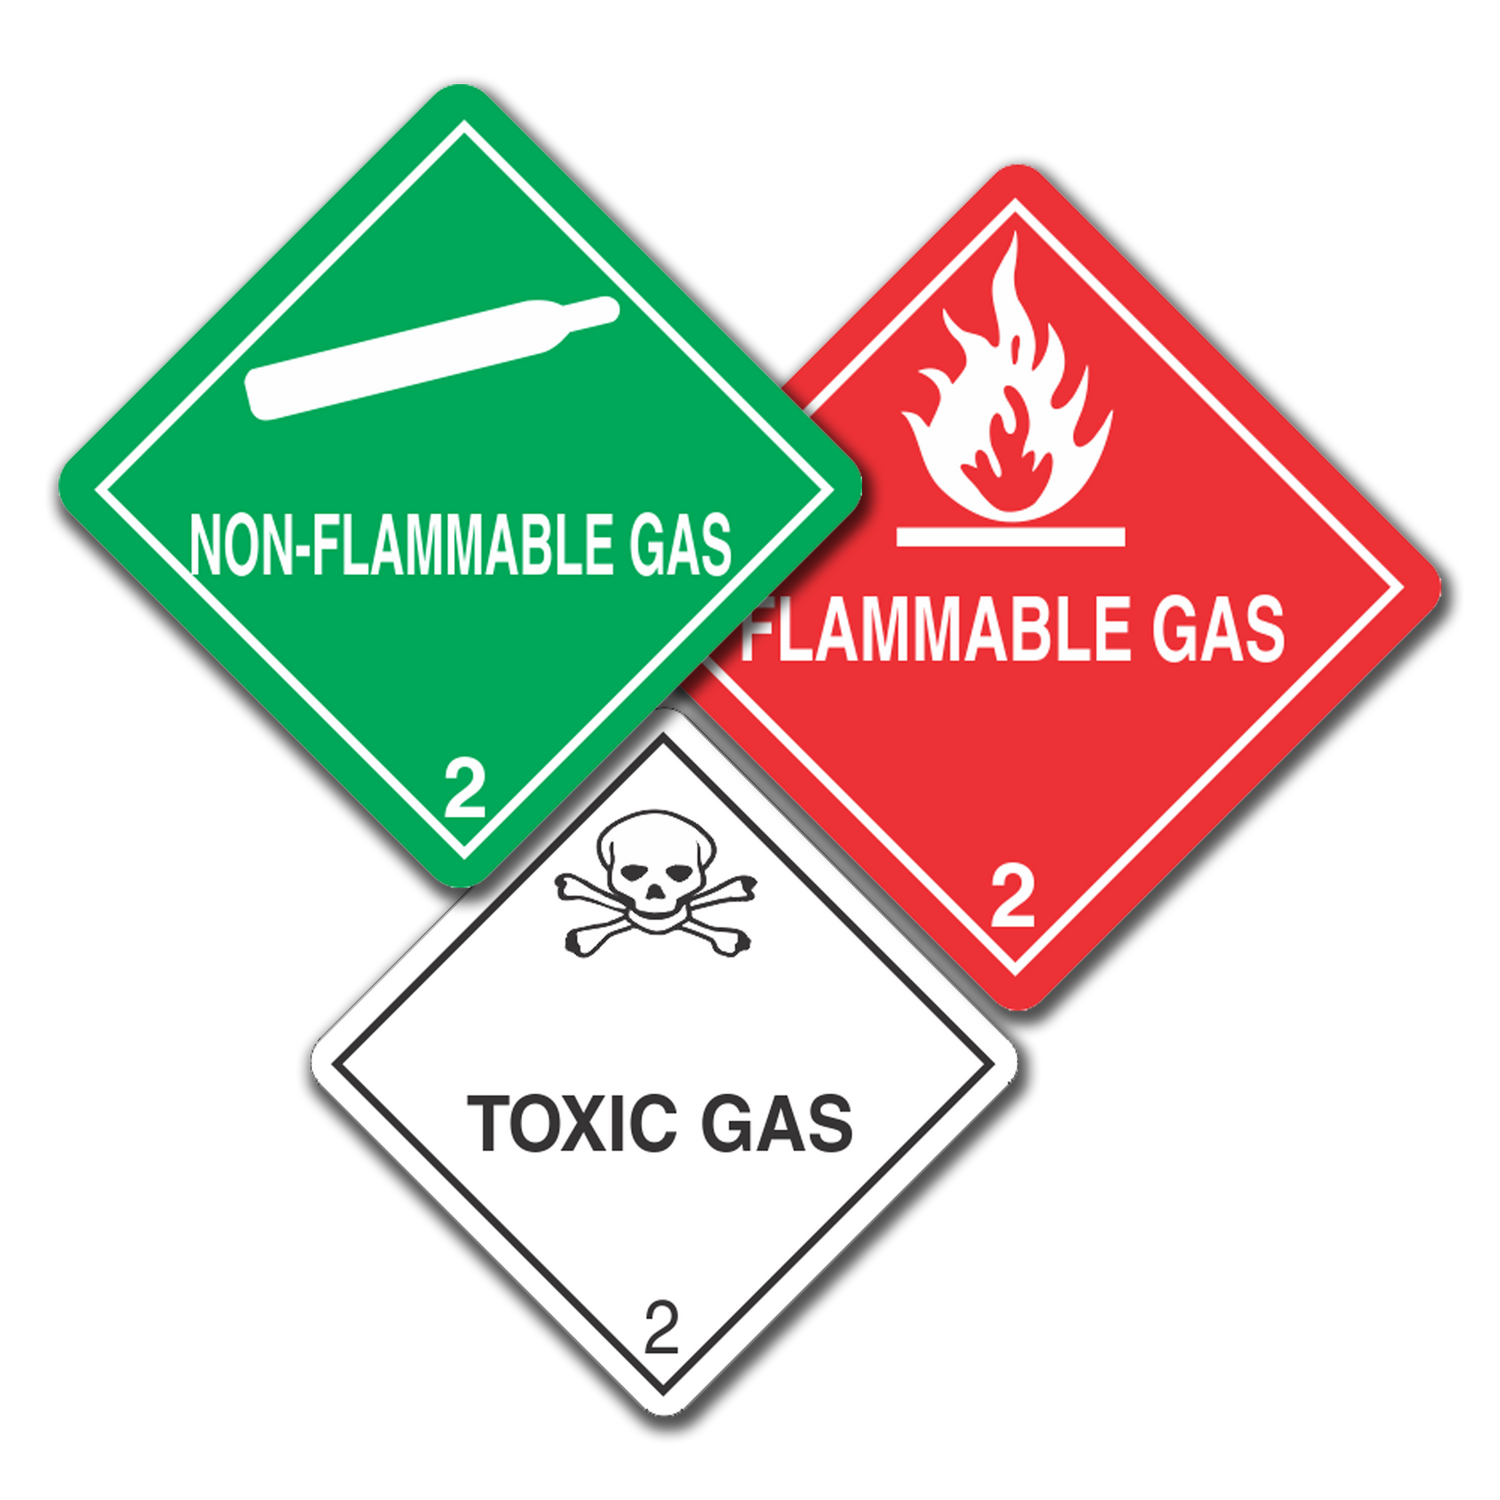 Class 2 - Gases, UN Dangerous Goods